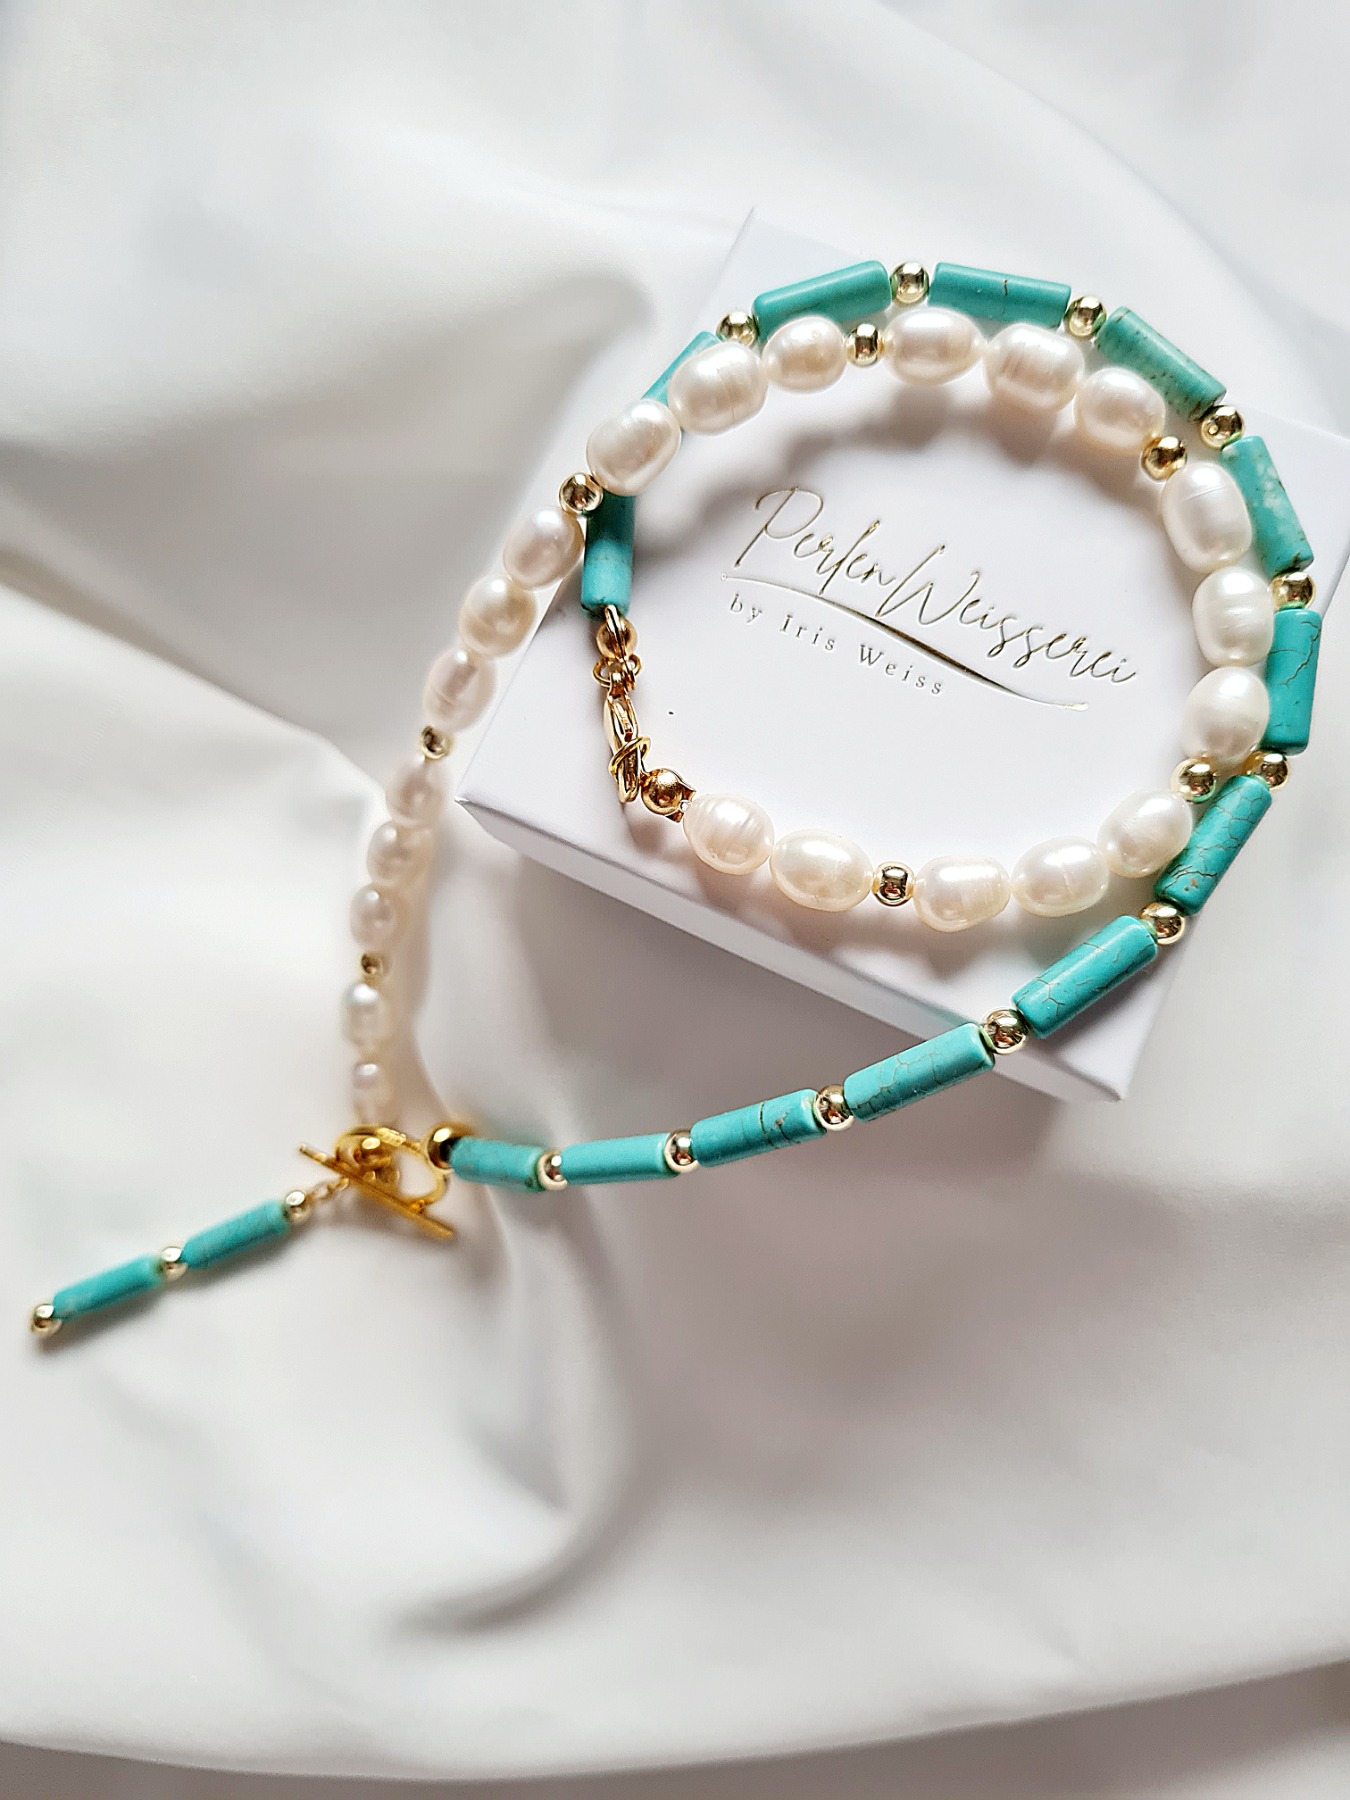 Halskette aus Süßwasser-Zucht-Perlen 9